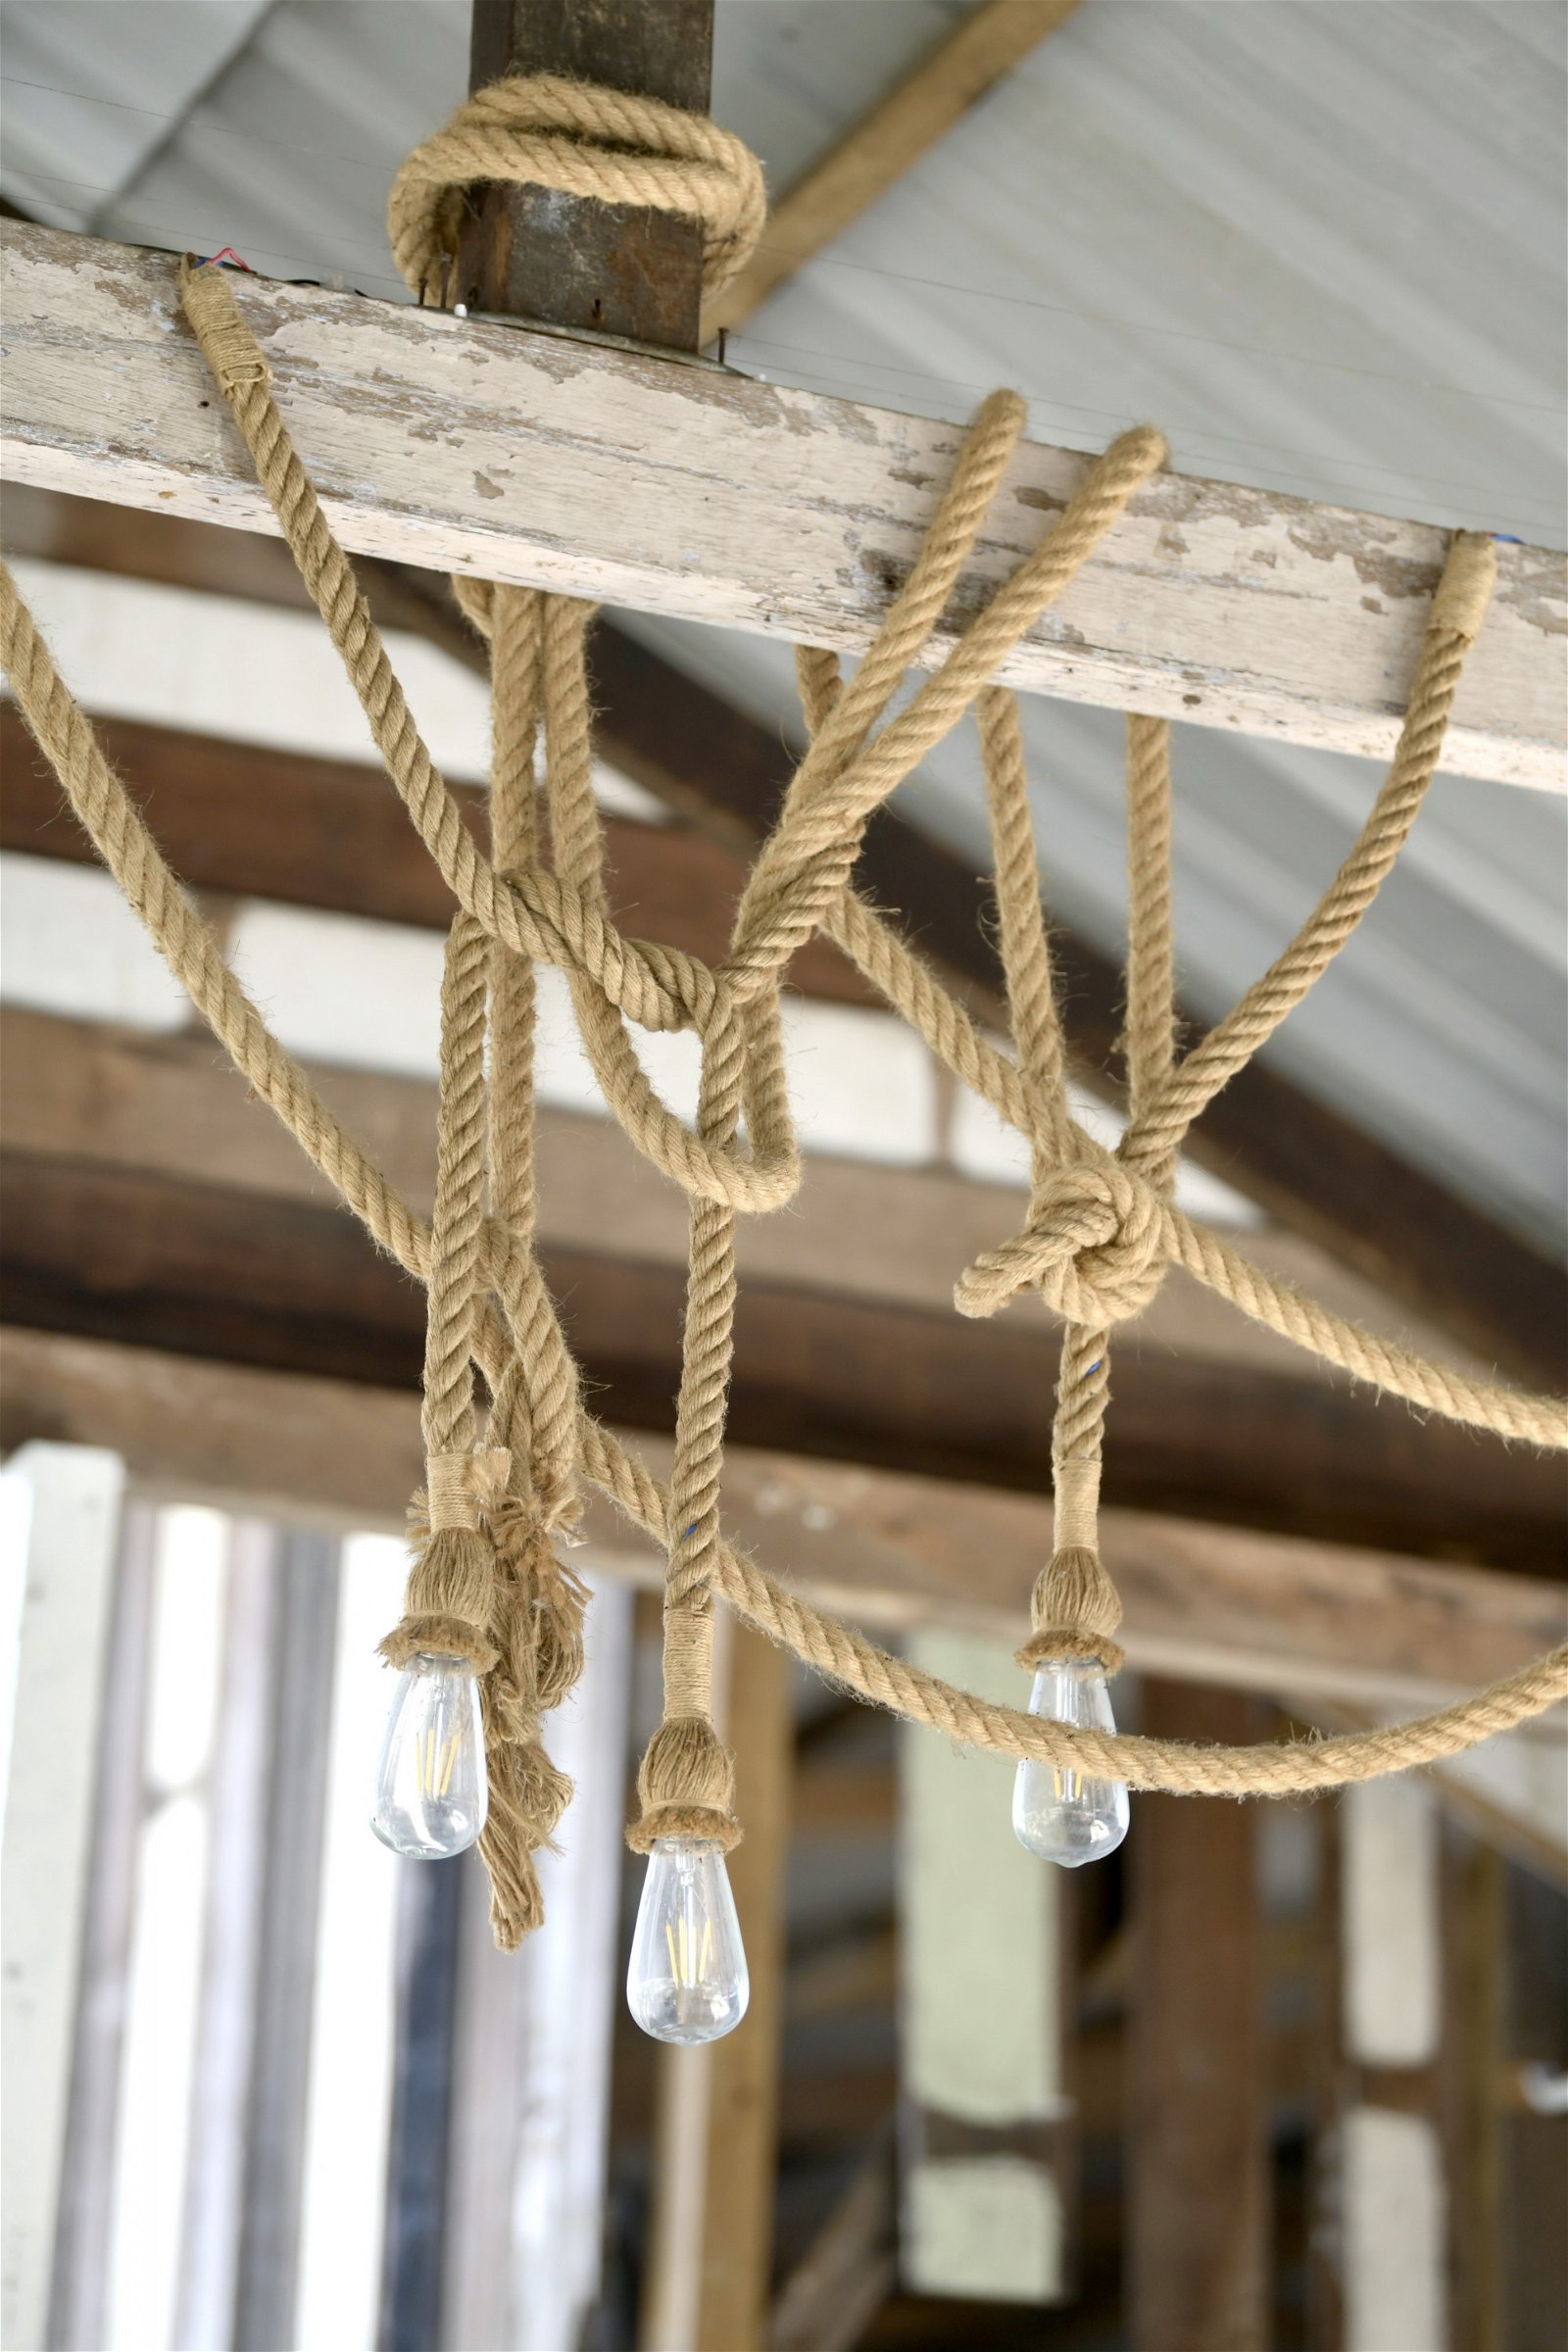 用麻绳悬绑在梁上的灯泡有著随性的艺术感。